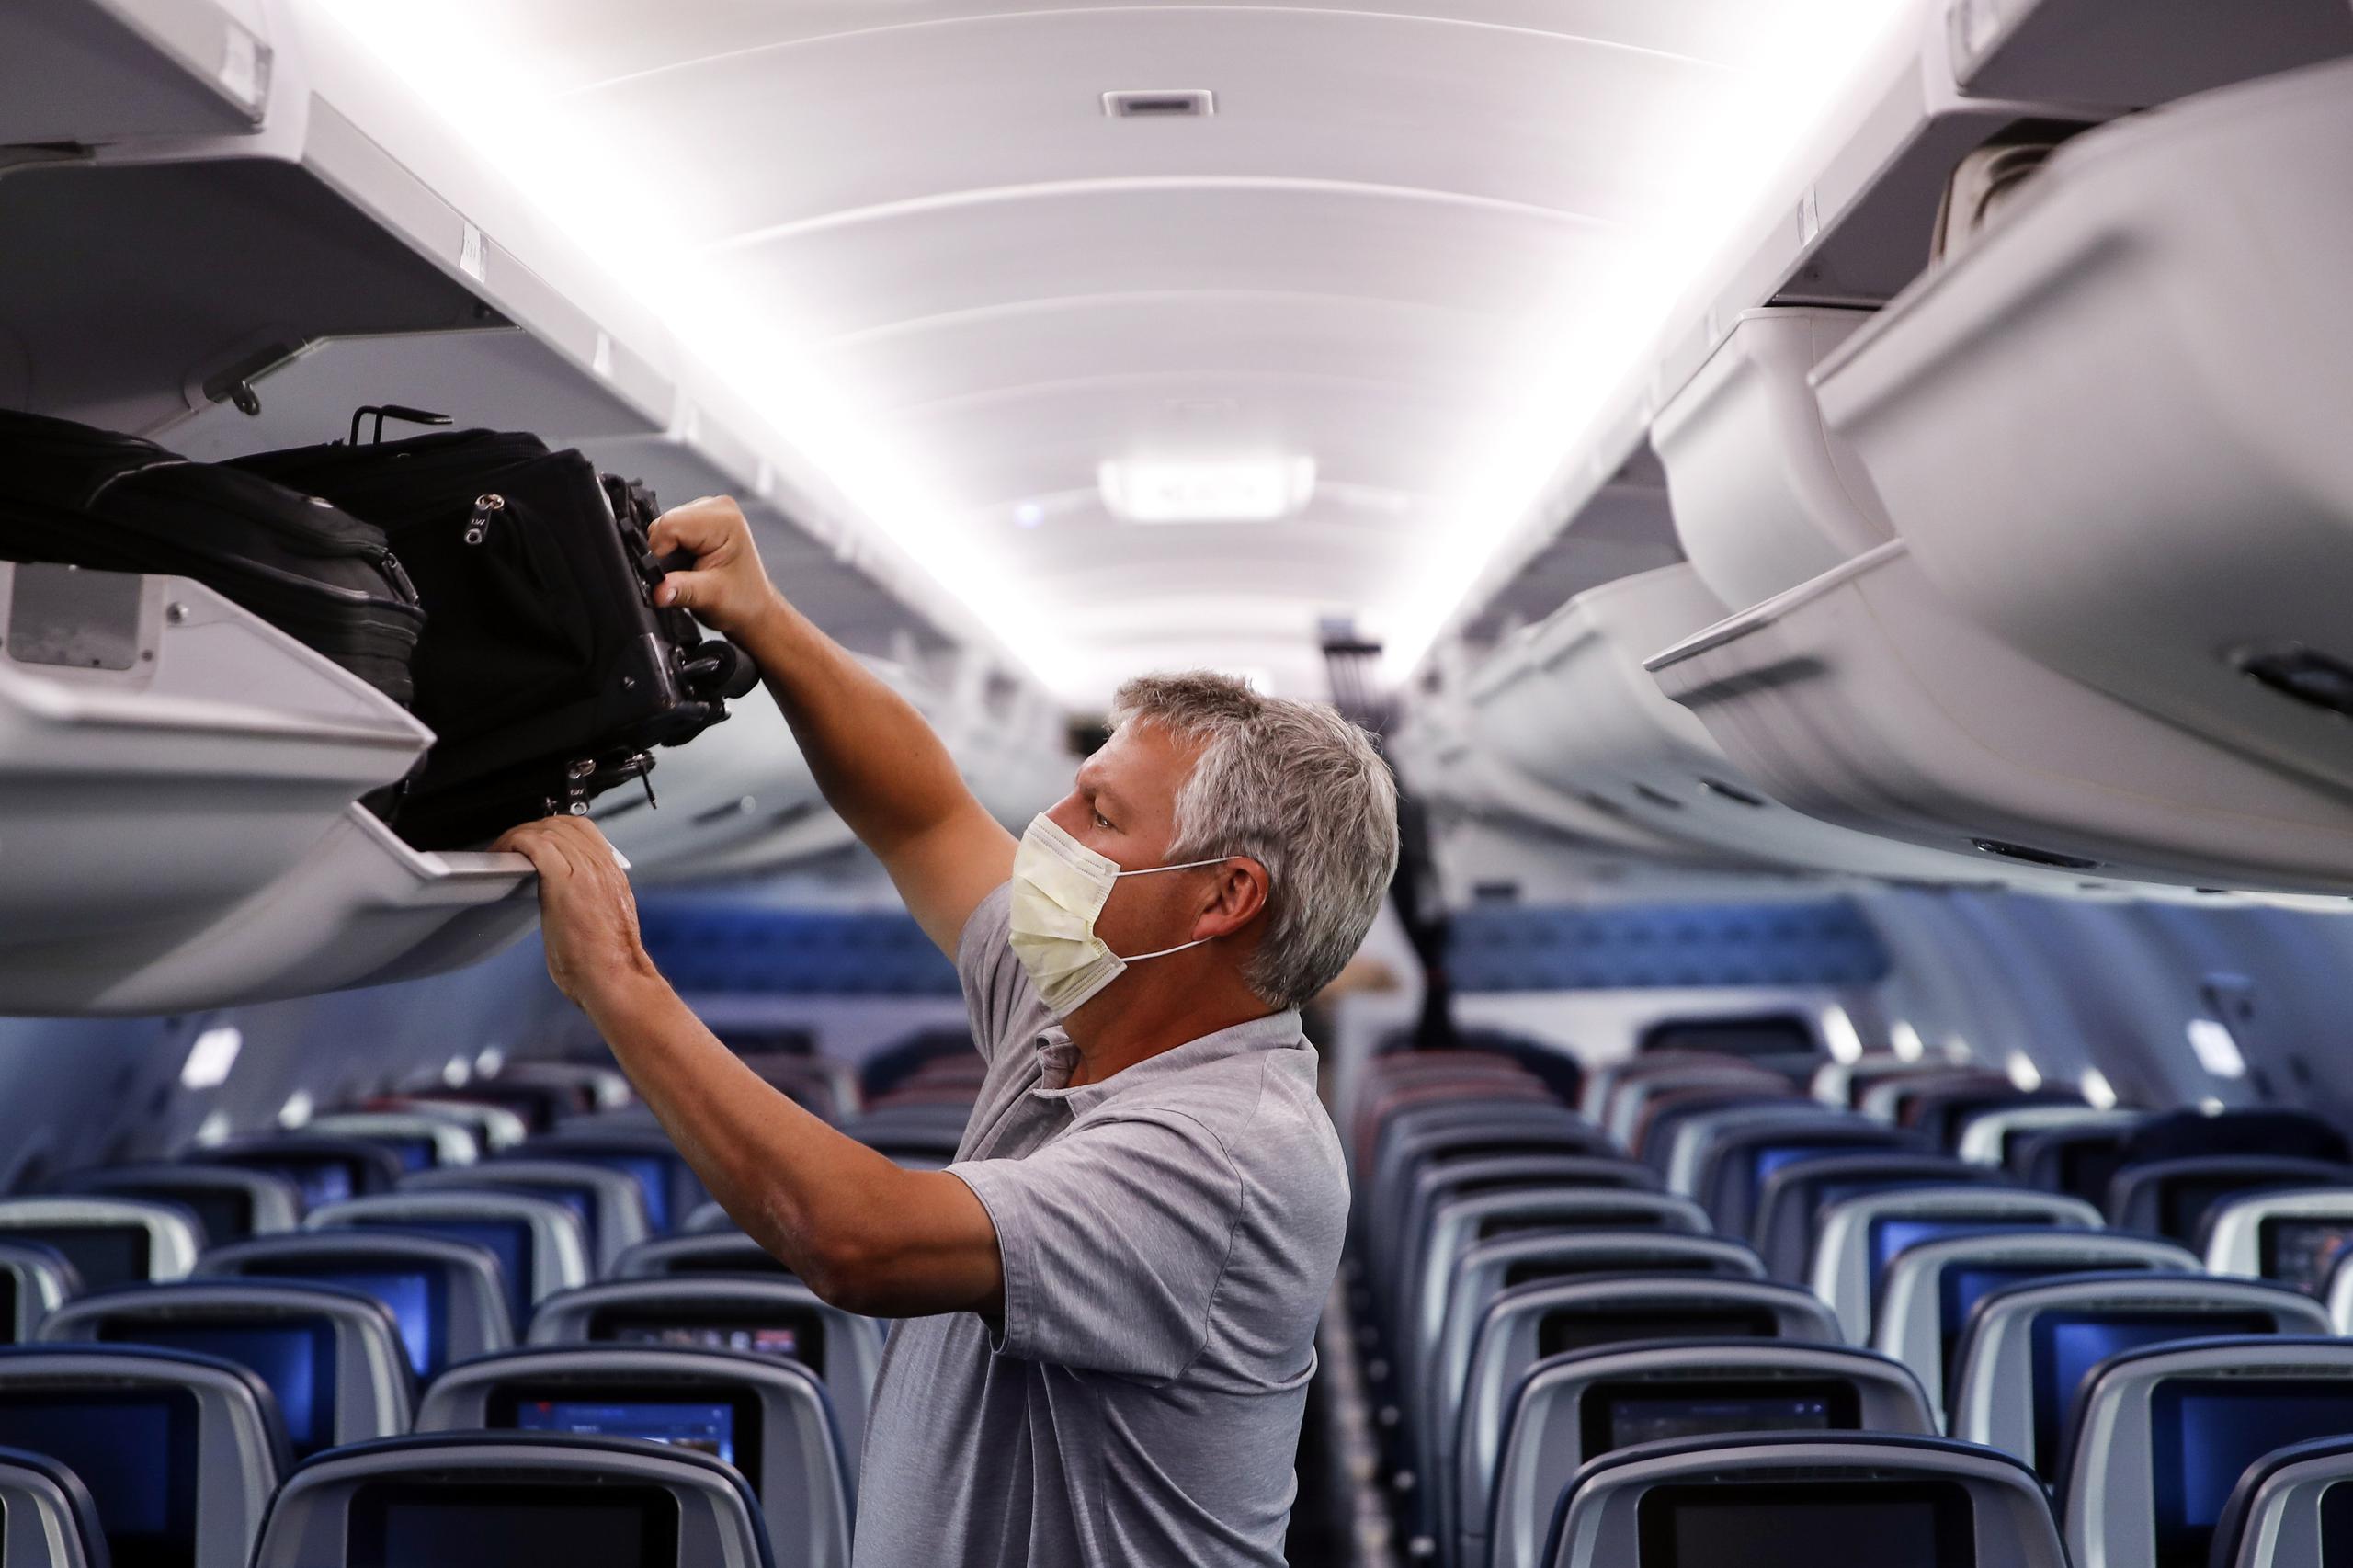 La norma federal permitía que se aplicasen multas a los pasajeros que se niegan a usar mascarillas en sus viajes, y esas penalidades van de 500 a 3,000 dólares para los reincidentes.